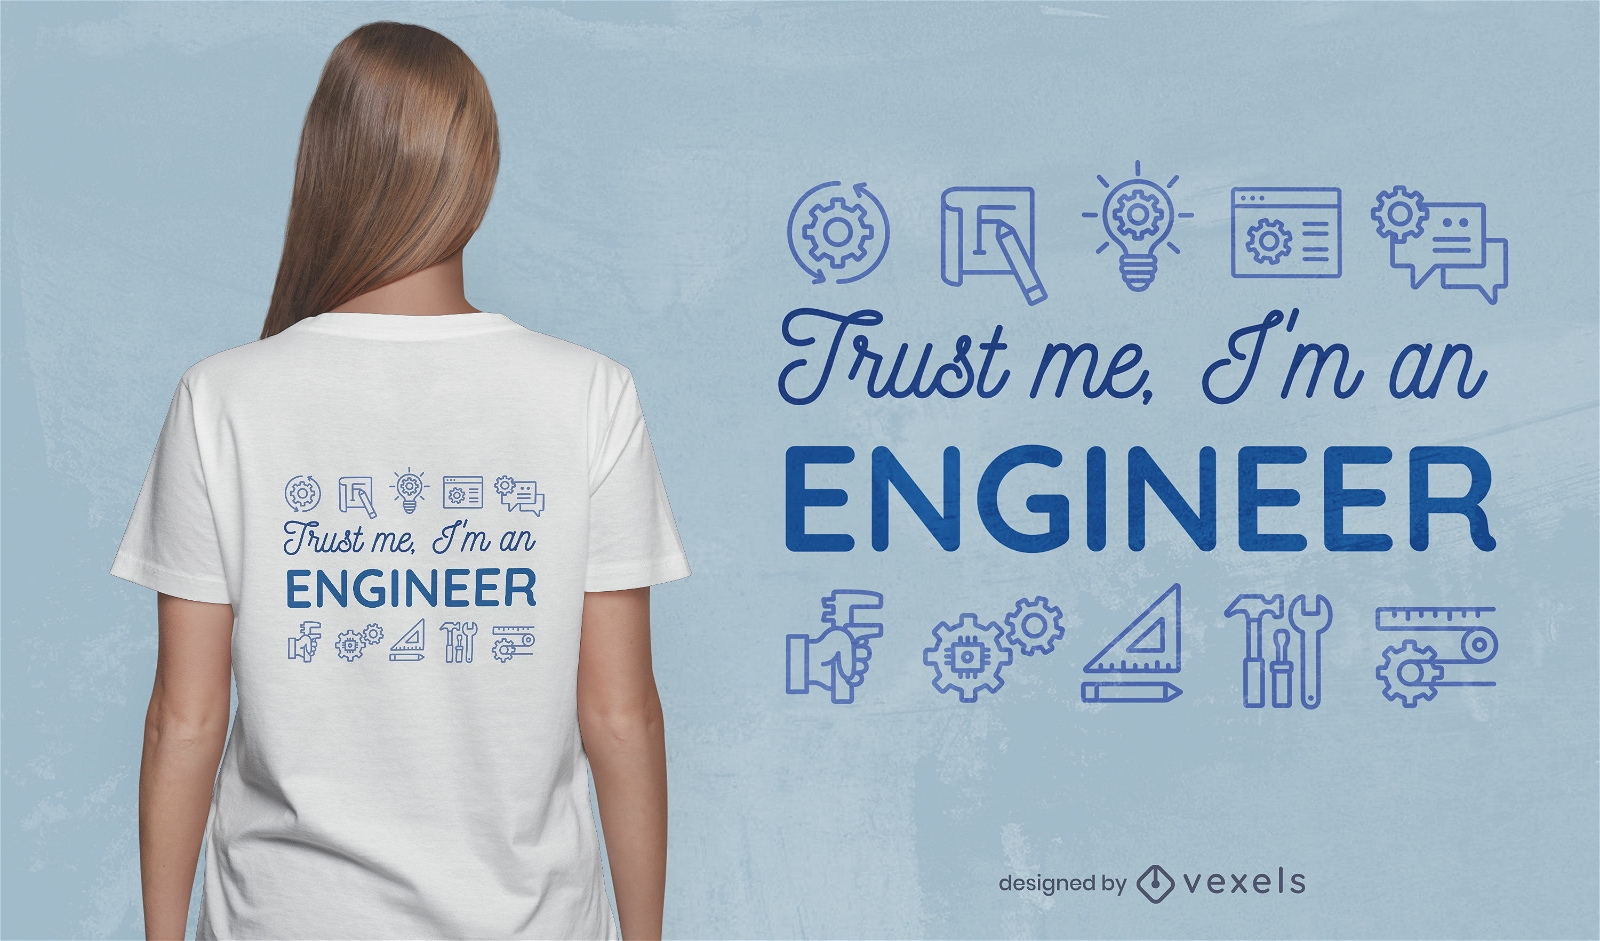 Ingenieurzitat und Elemente-T-Shirt-Design